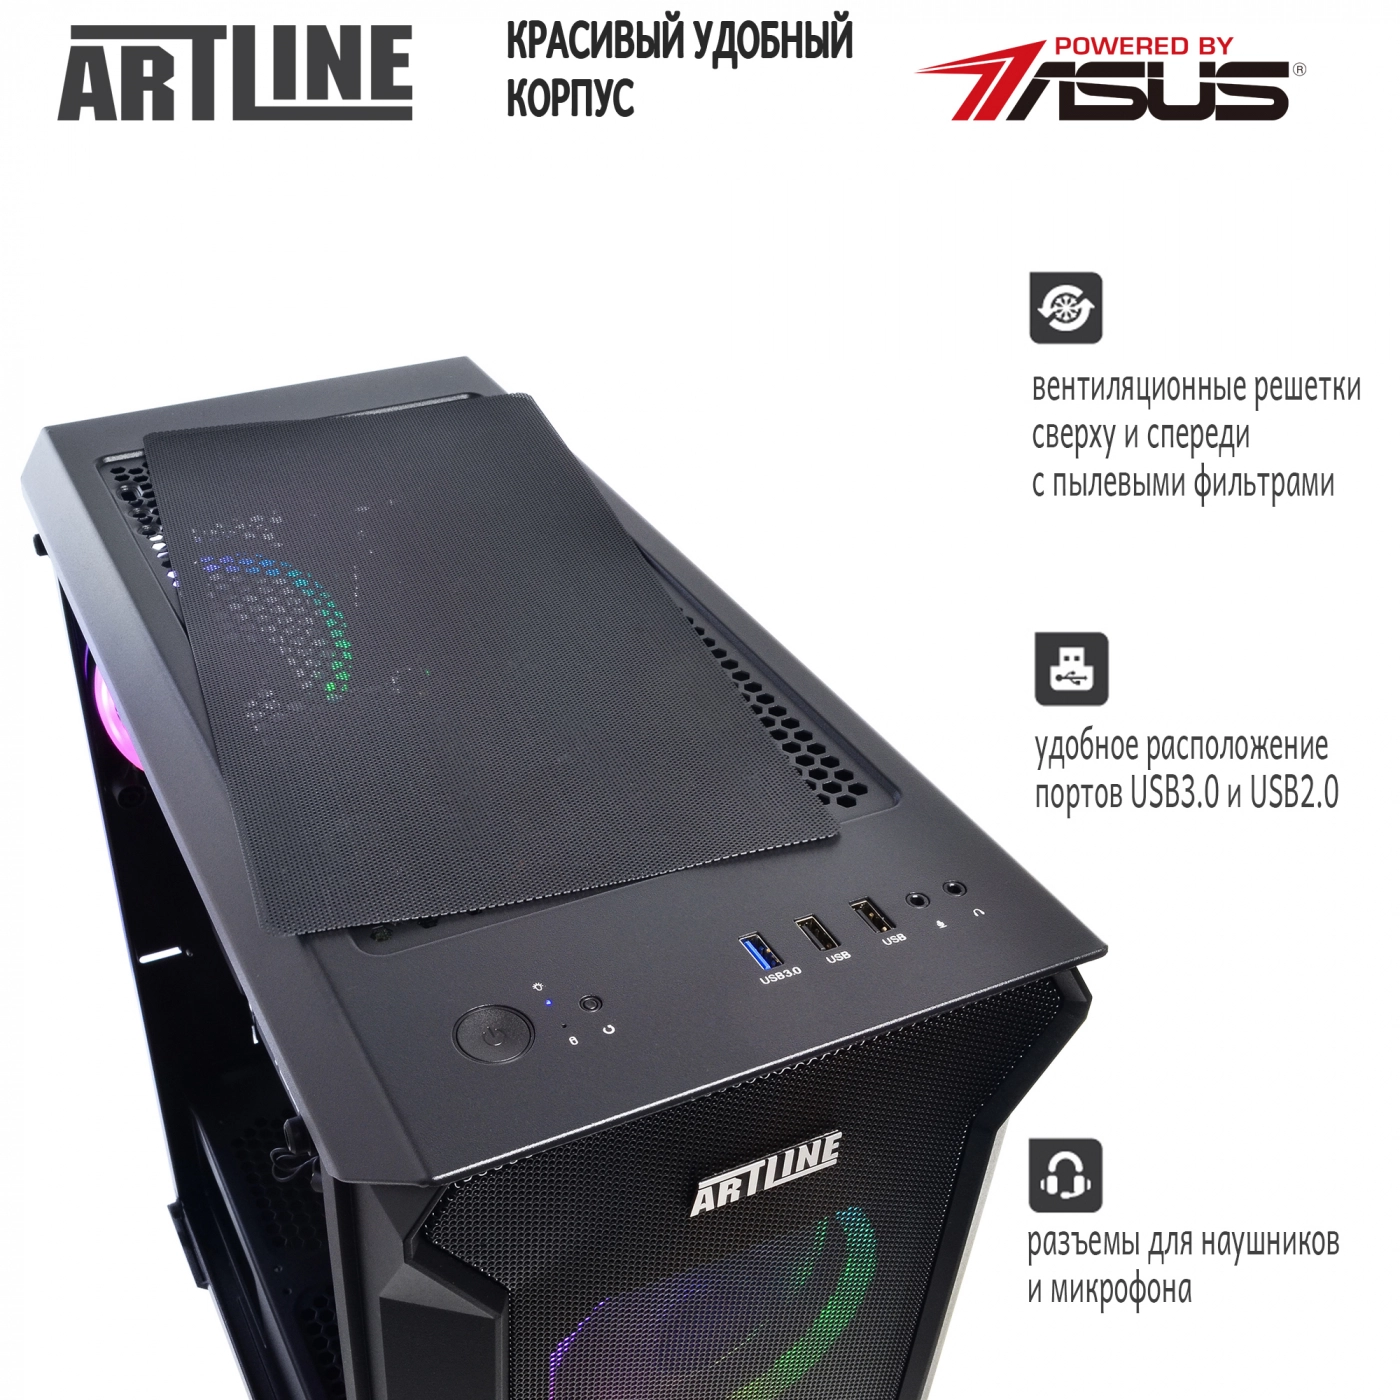 Купить Компьютер ARTLINE Gaming X87v21 - фото 5